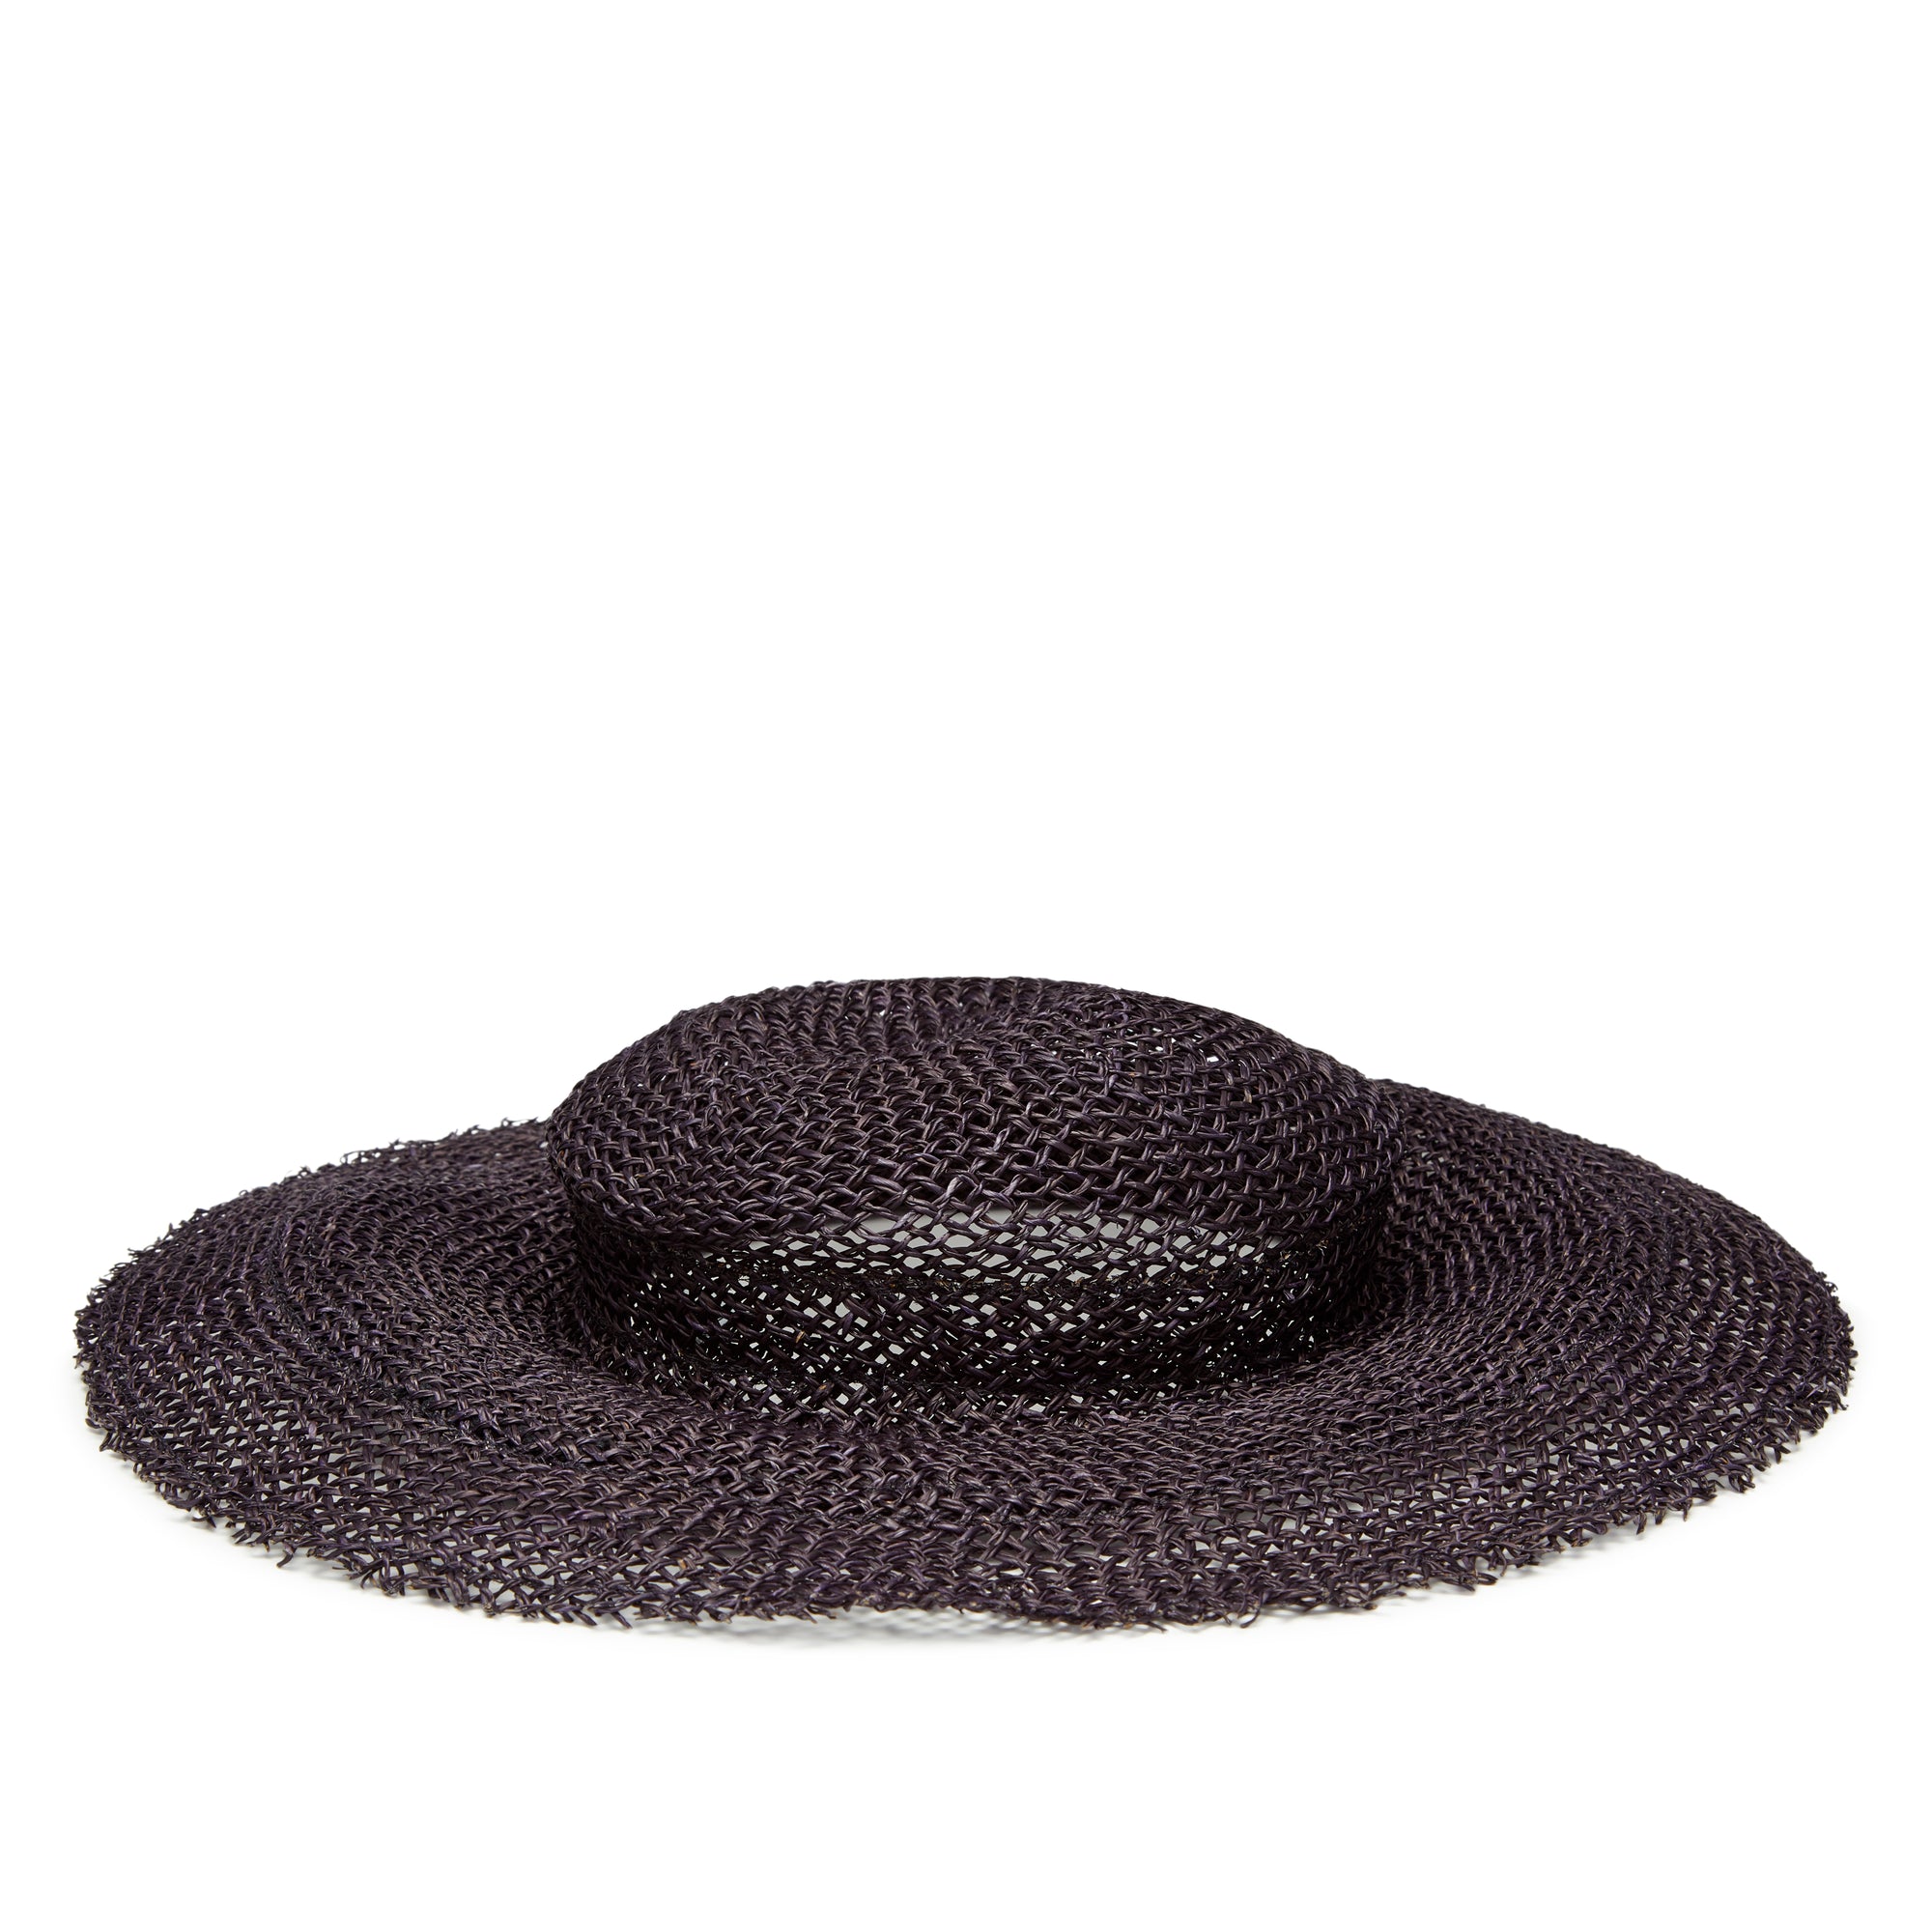 Scha - Women's Traveler Short Unique Woven Hat - (Black) view 2